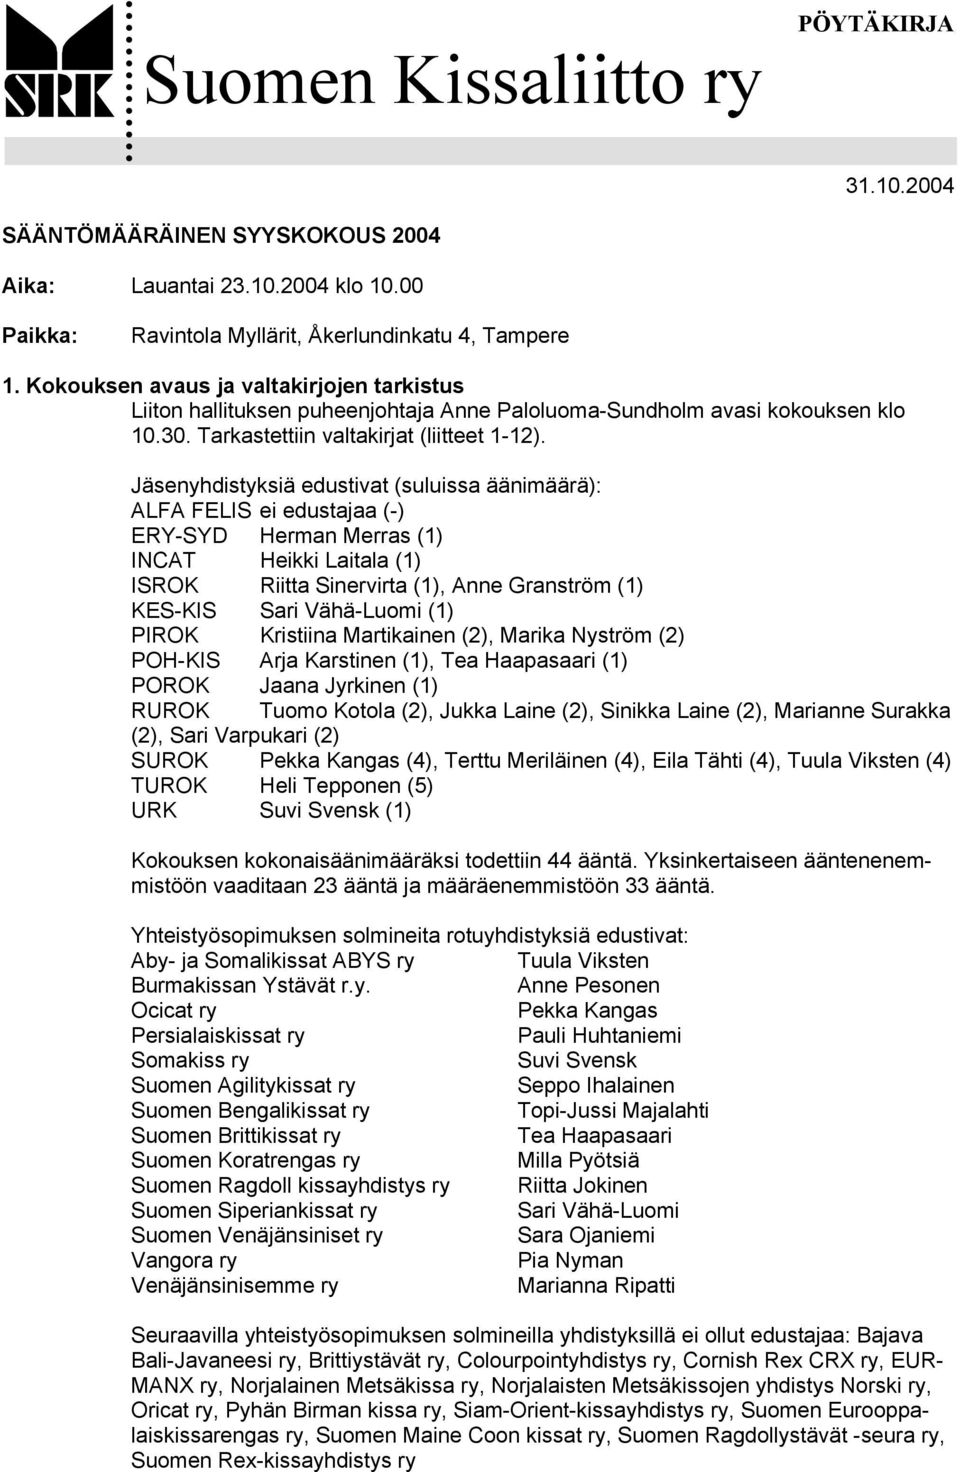 Jäsenyhdistyksiä edustivat (suluissa äänimäärä): ALFA FELIS ei edustajaa (-) ERY-SYD Herman Merras (1) INCAT Heikki Laitala (1) ISROK Riitta Sinervirta (1), Anne Granström (1) KES-KIS Sari Vähä-Luomi